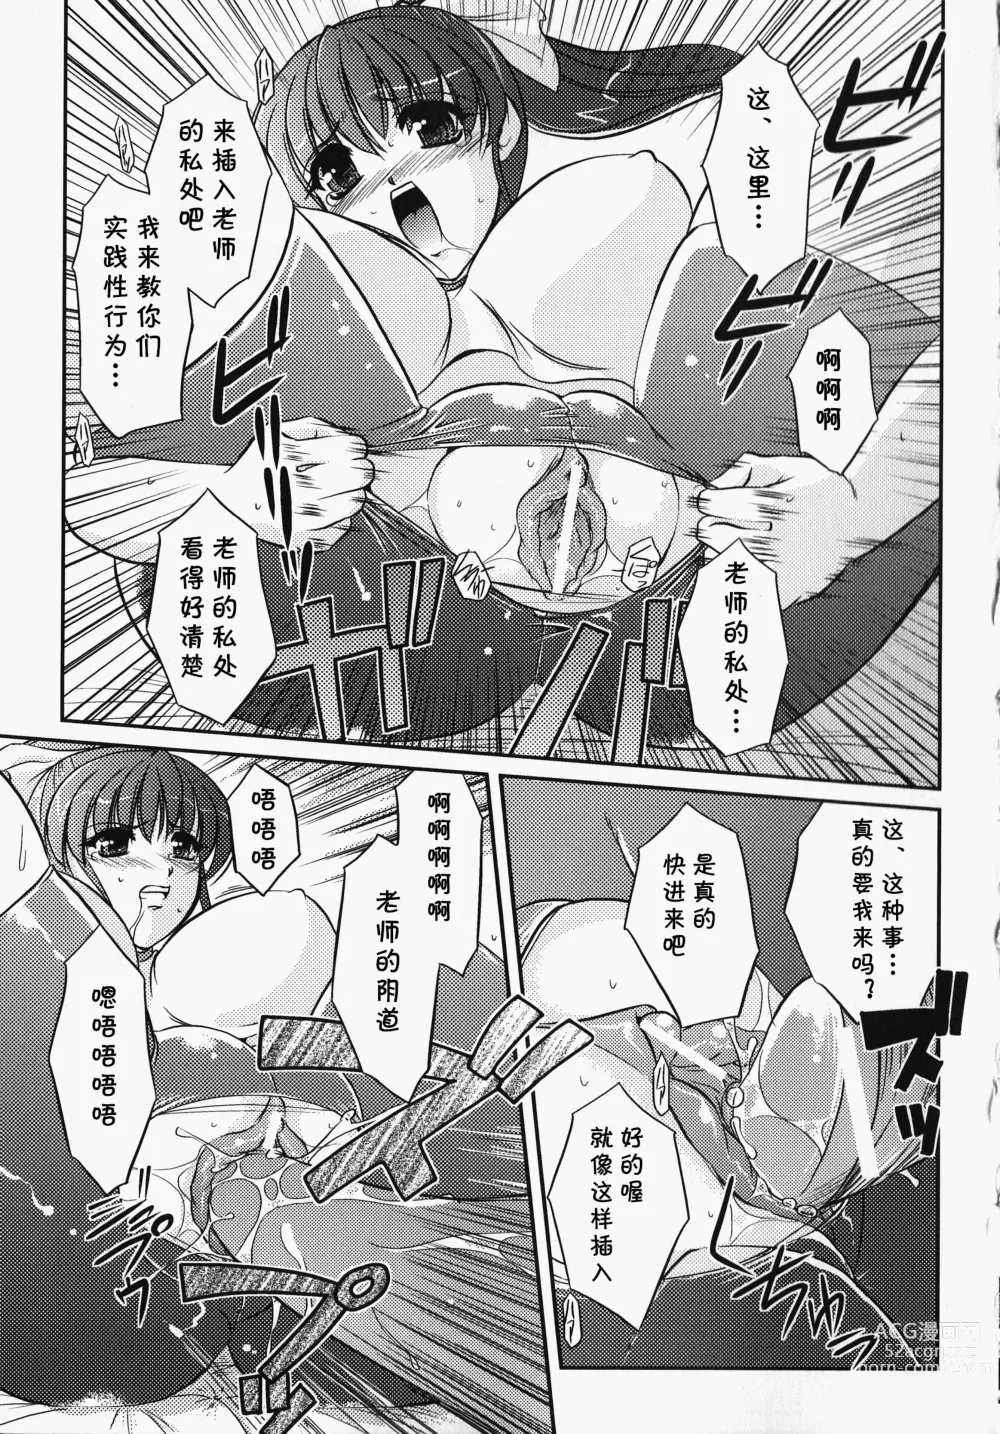 Page 10 of manga Bokura no Sensei  to  Himitsu  Jisshuu